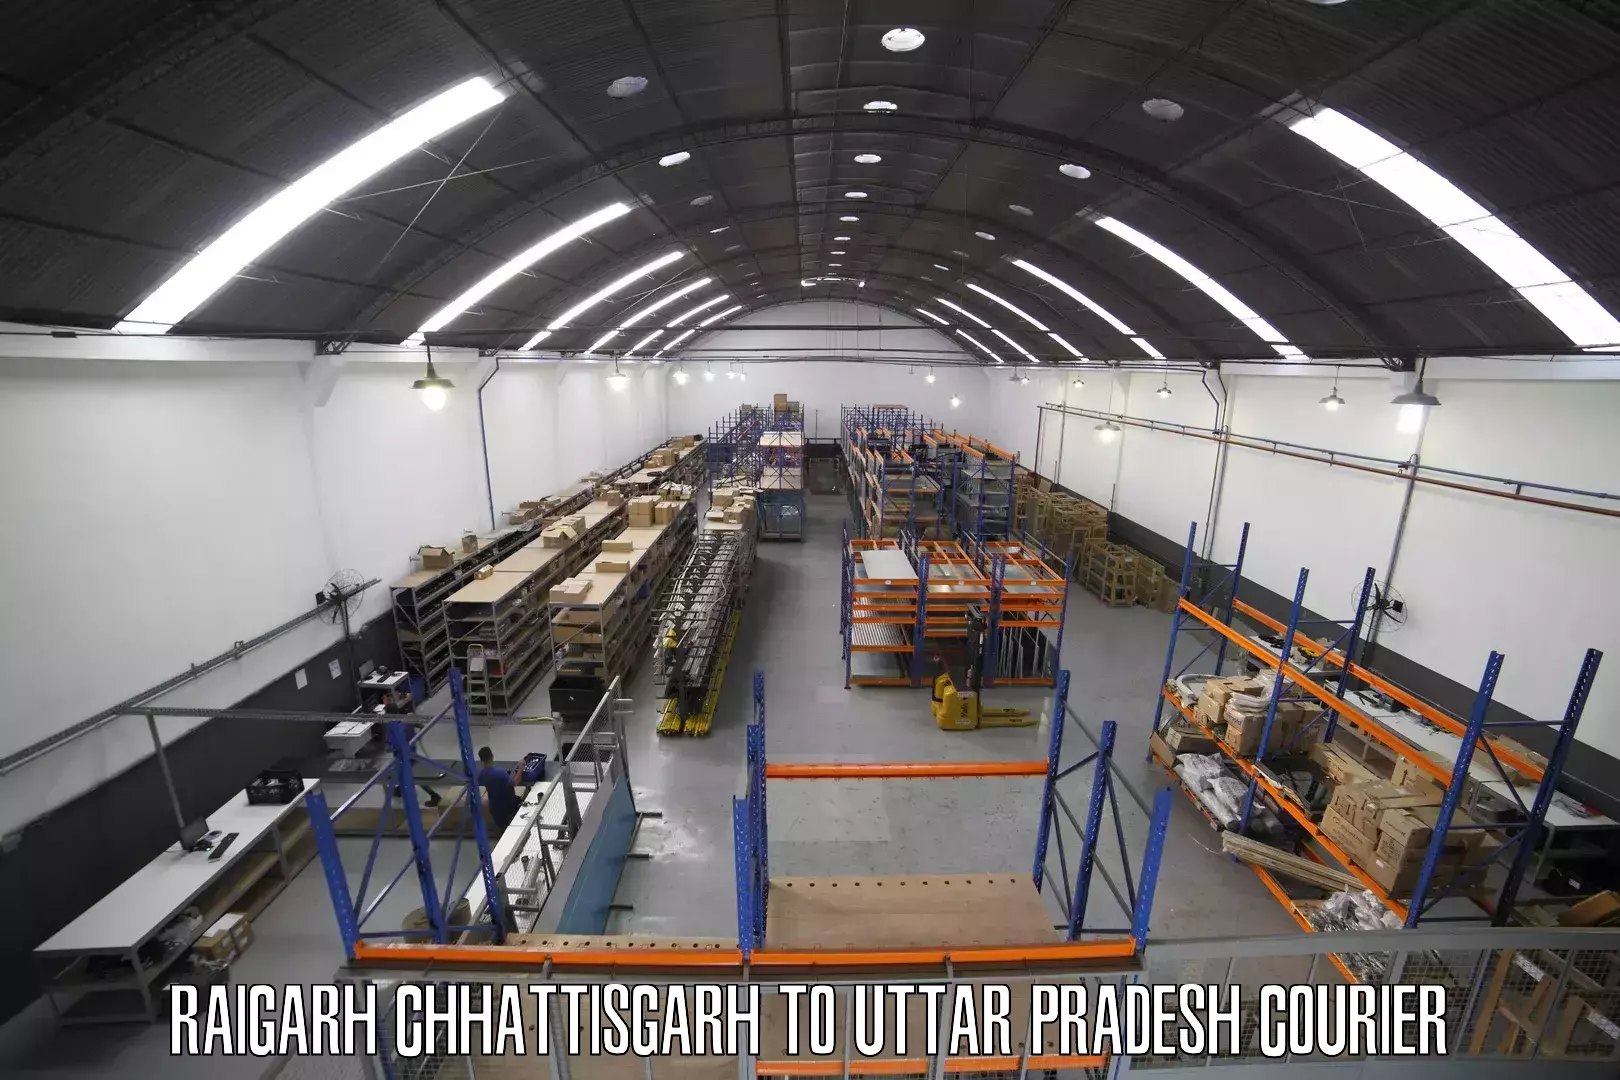 Courier service comparison Raigarh Chhattisgarh to Konch